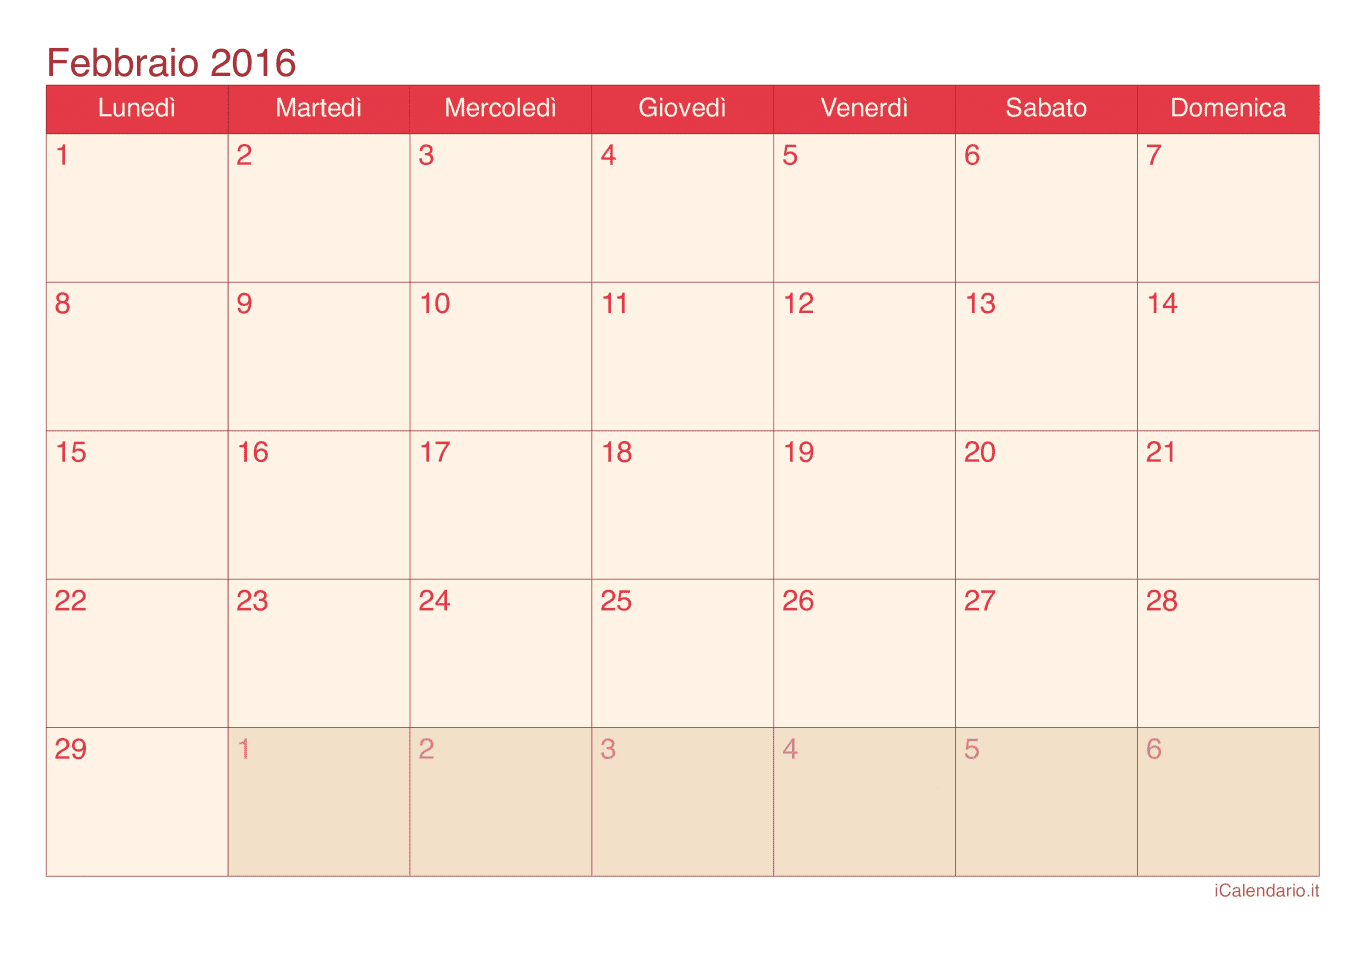 Calendario di febbraio 2016 - Cherry